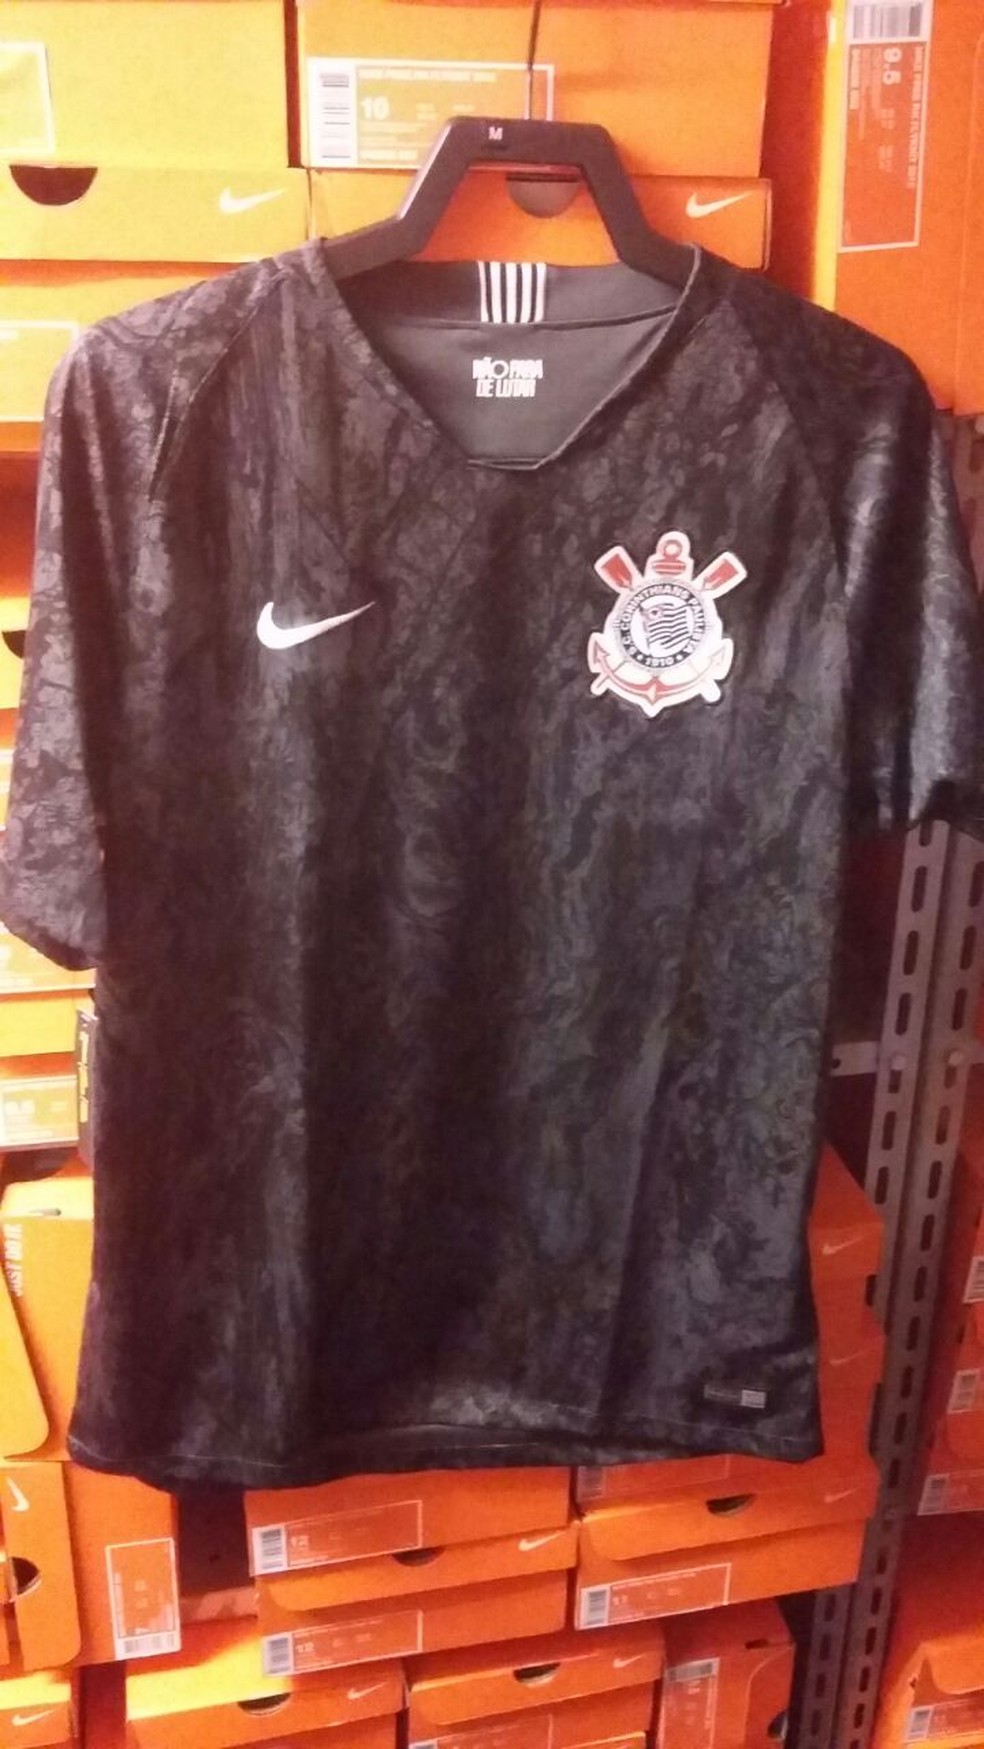 Segunda camisa do Corinthians terÃ¡ uma espÃ©cie de camuflagem (Foto: ReproduÃ§Ã£o)